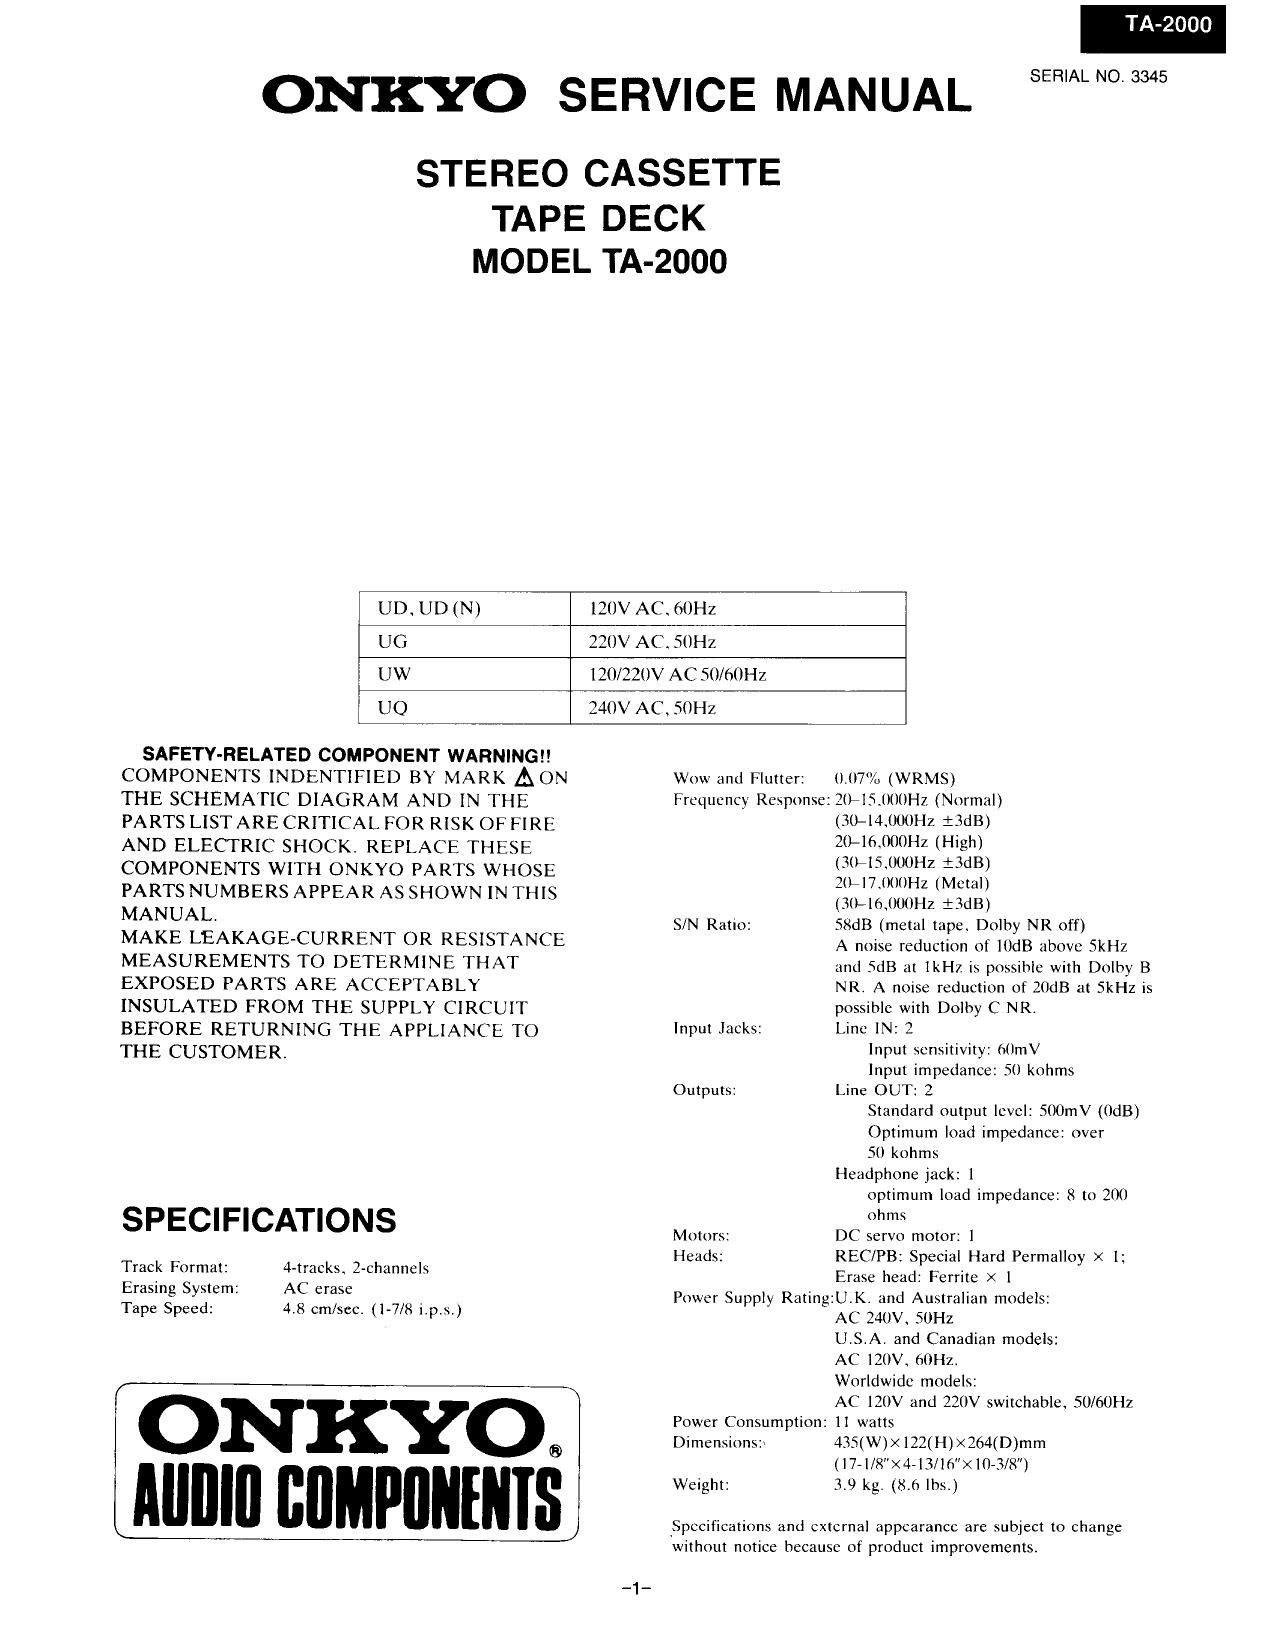 Onkyo TA 2000 Service Manual